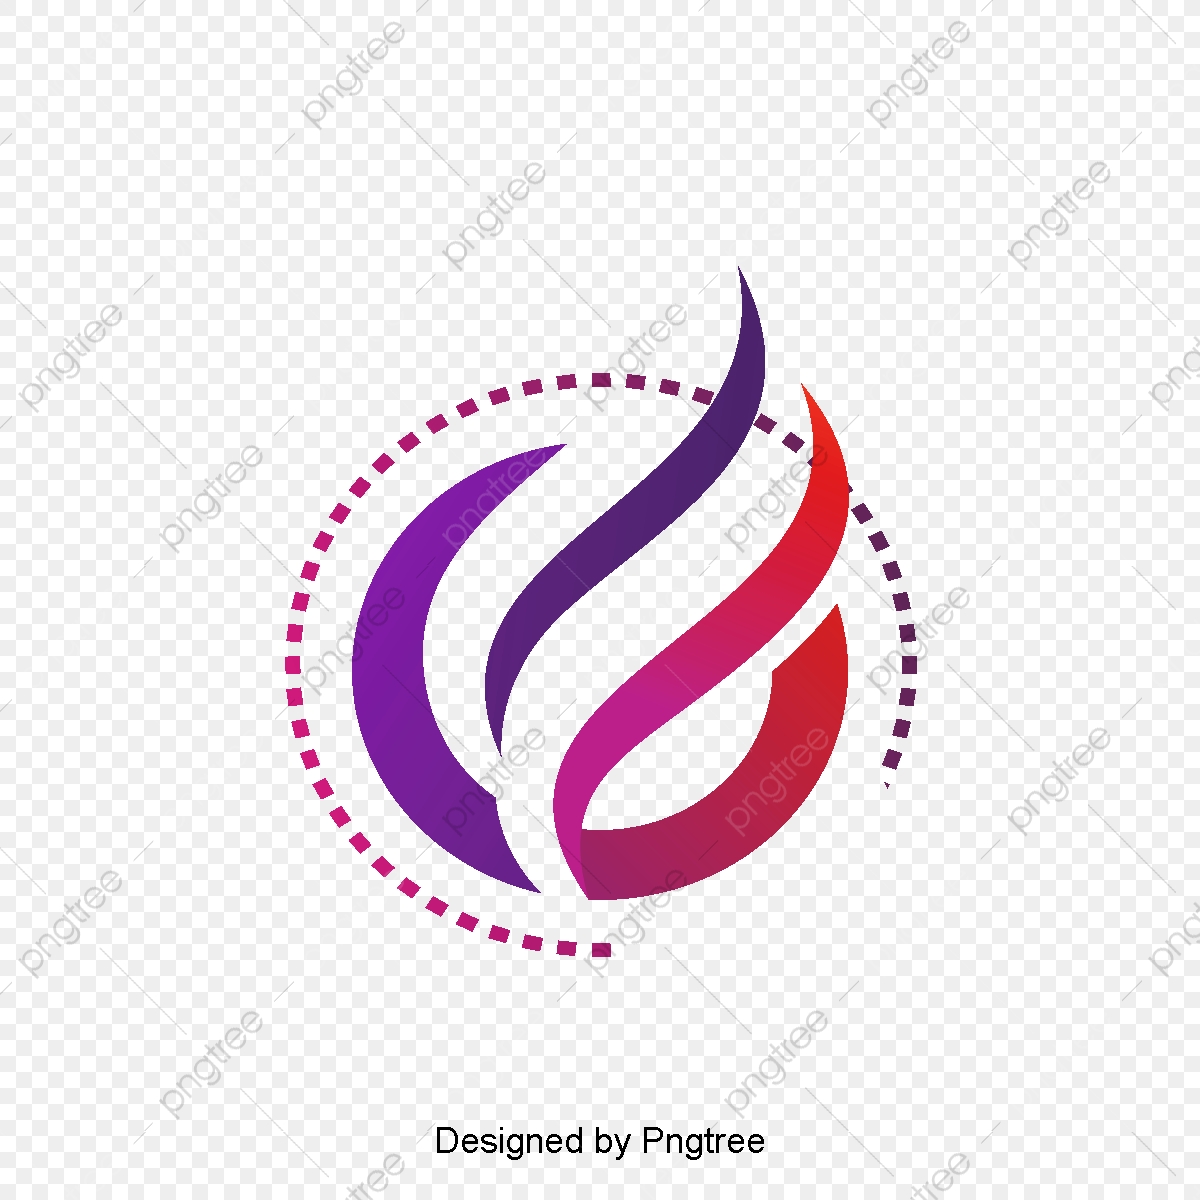 Cartoon Flame Logo Design Free Logo Design Template